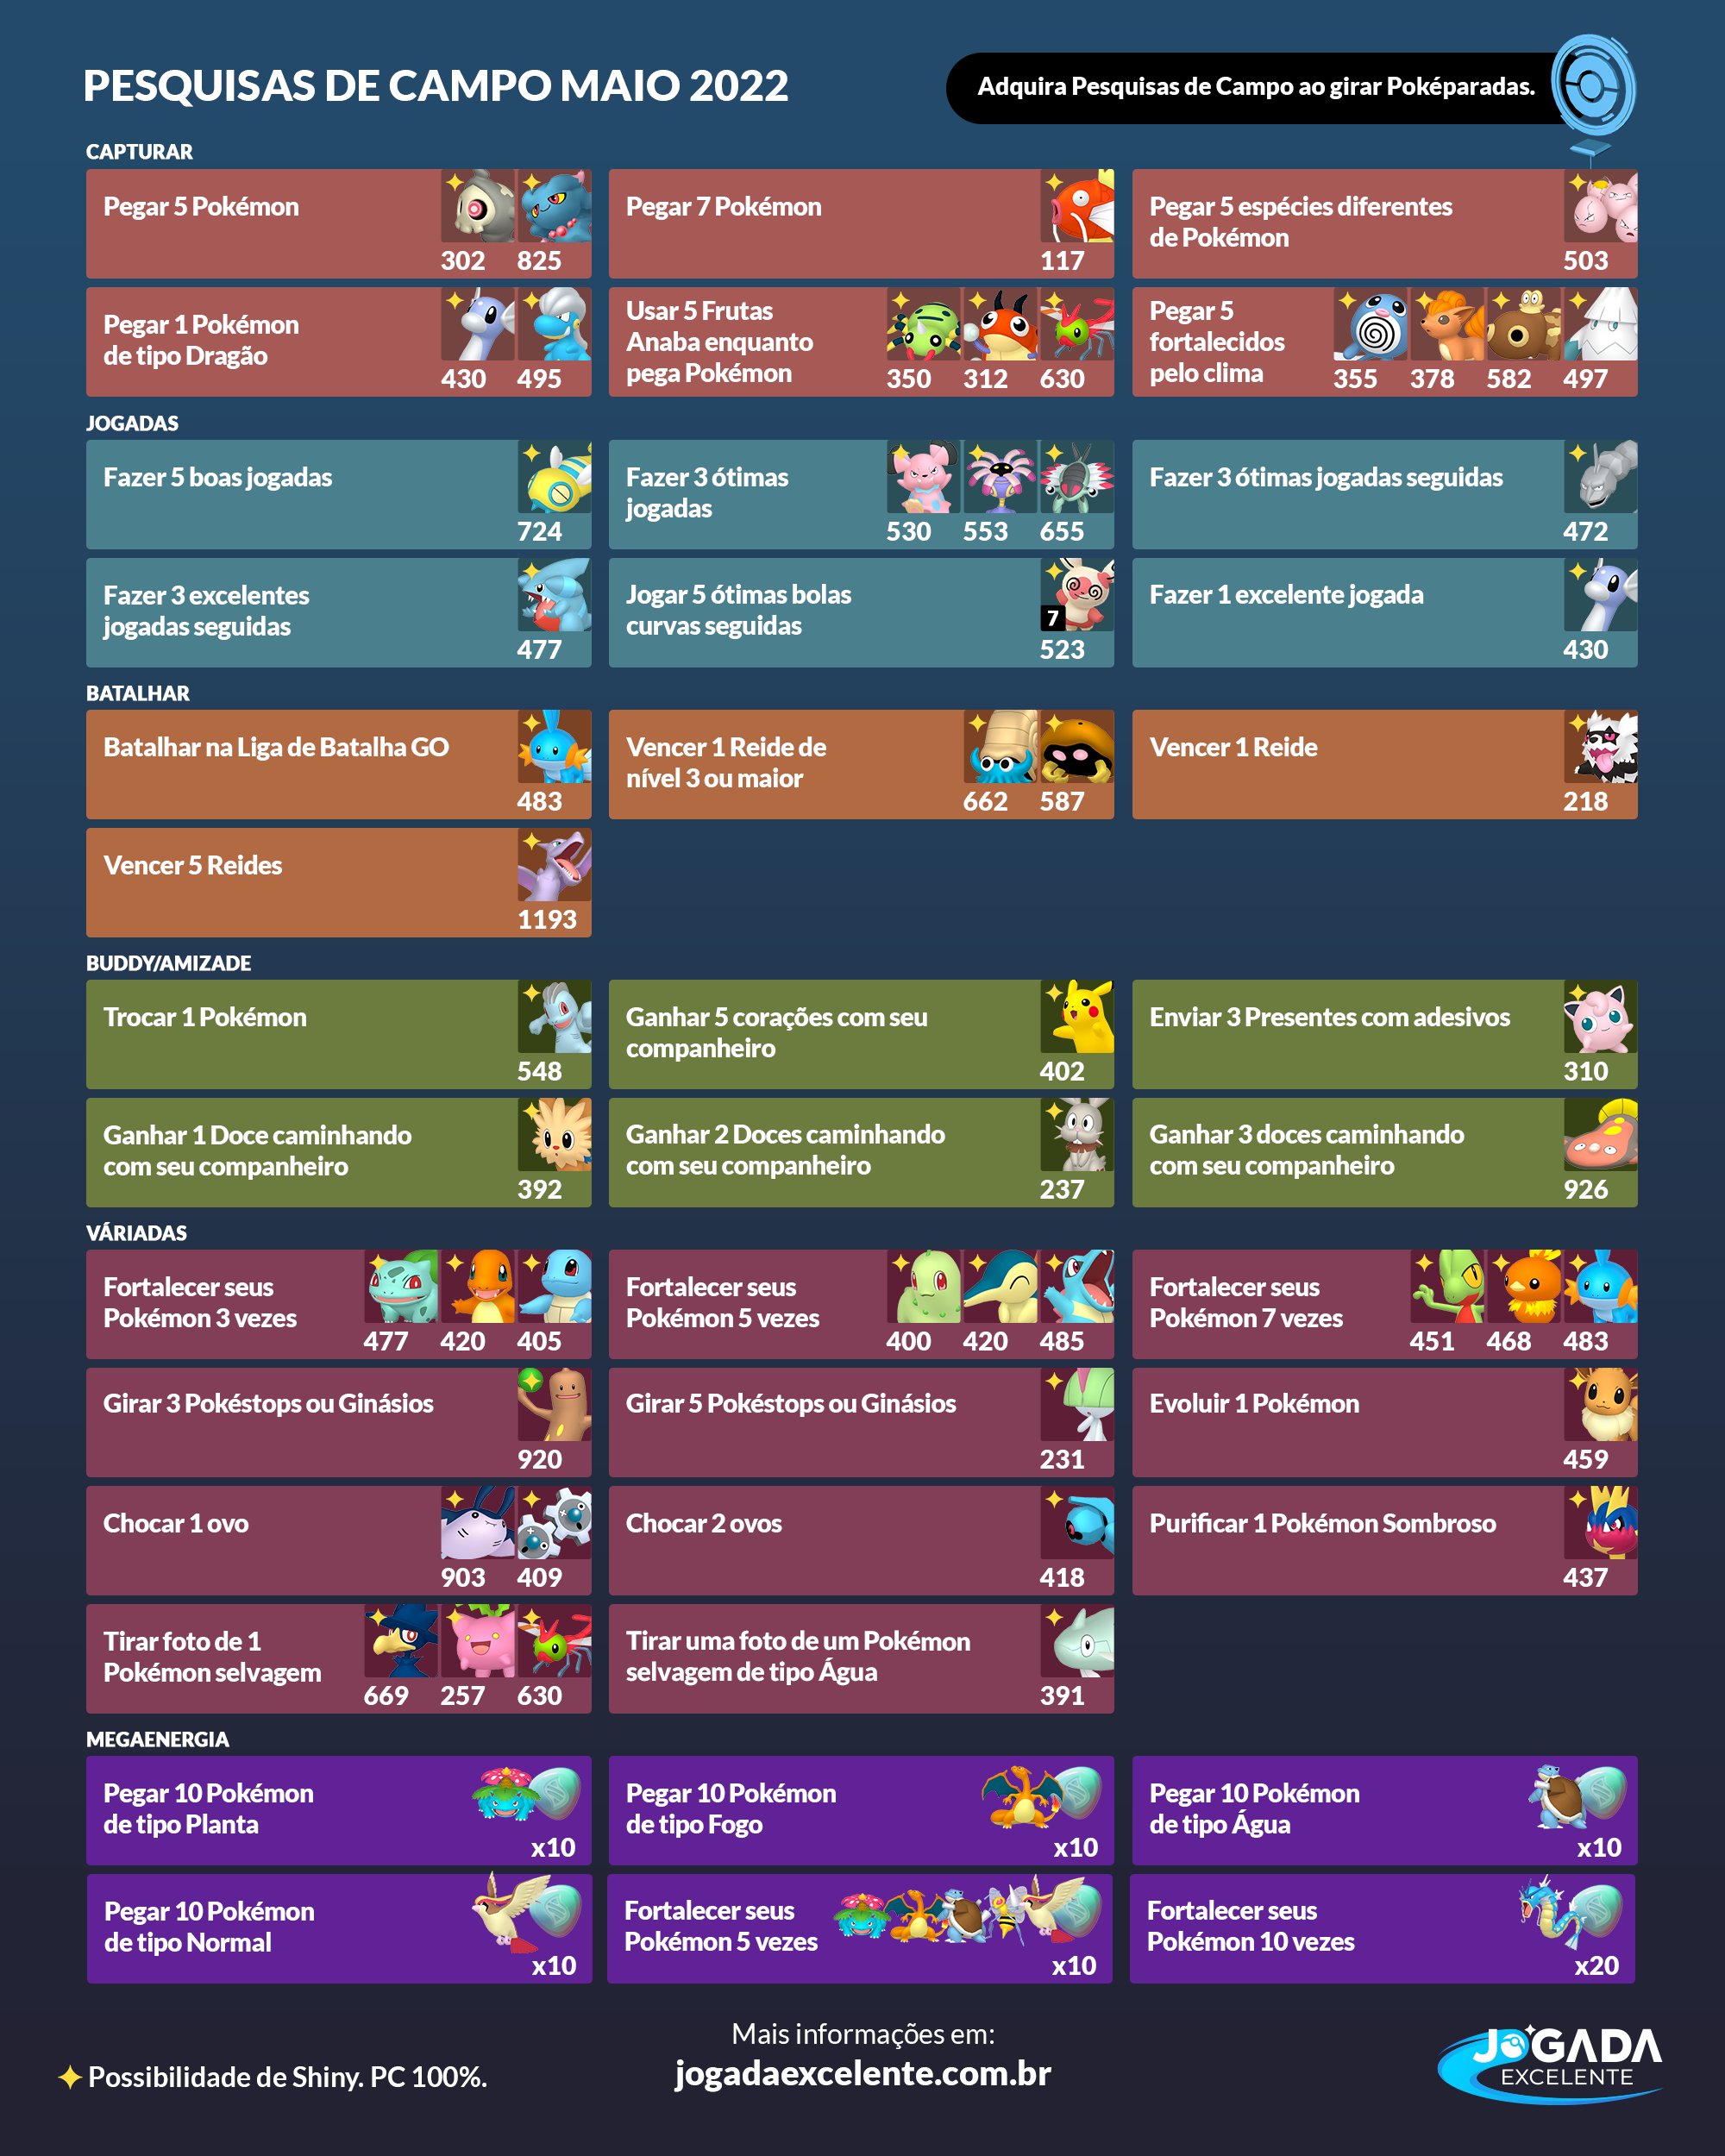 Pokémon GO - Pokémon Sombroso e Pokémon Purificado